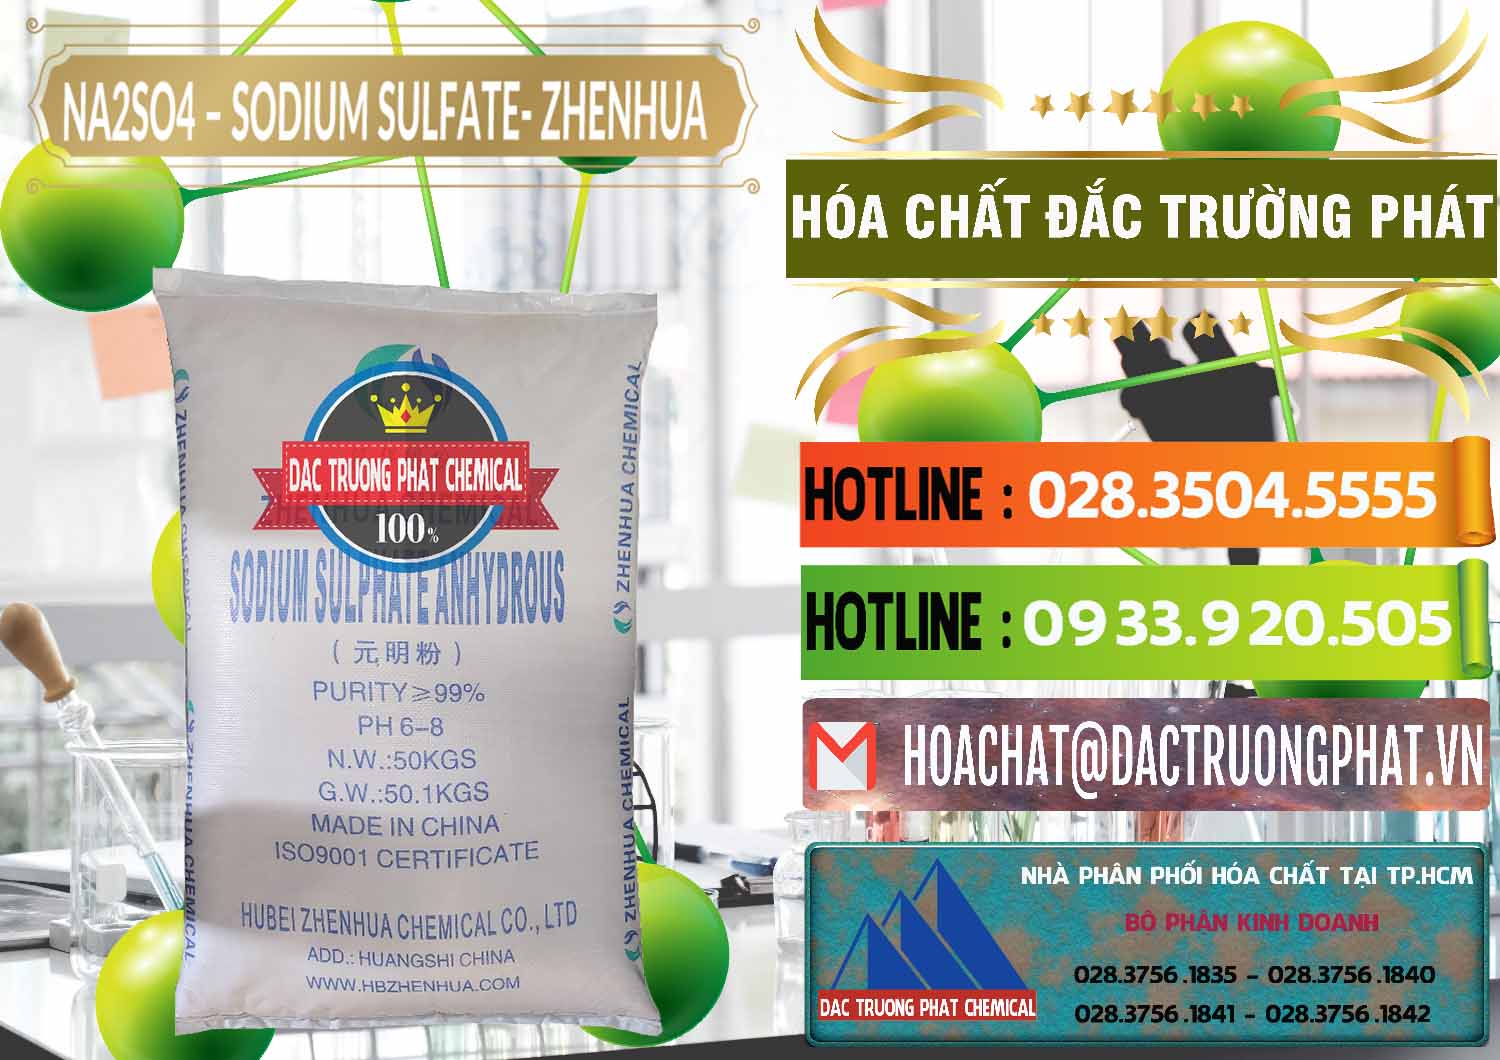 Cung cấp - bán Sodium Sulphate - Muối Sunfat Na2SO4 Zhenhua Trung Quốc China - 0101 - Nơi chuyên cung cấp ( kinh doanh ) hóa chất tại TP.HCM - cungcaphoachat.com.vn